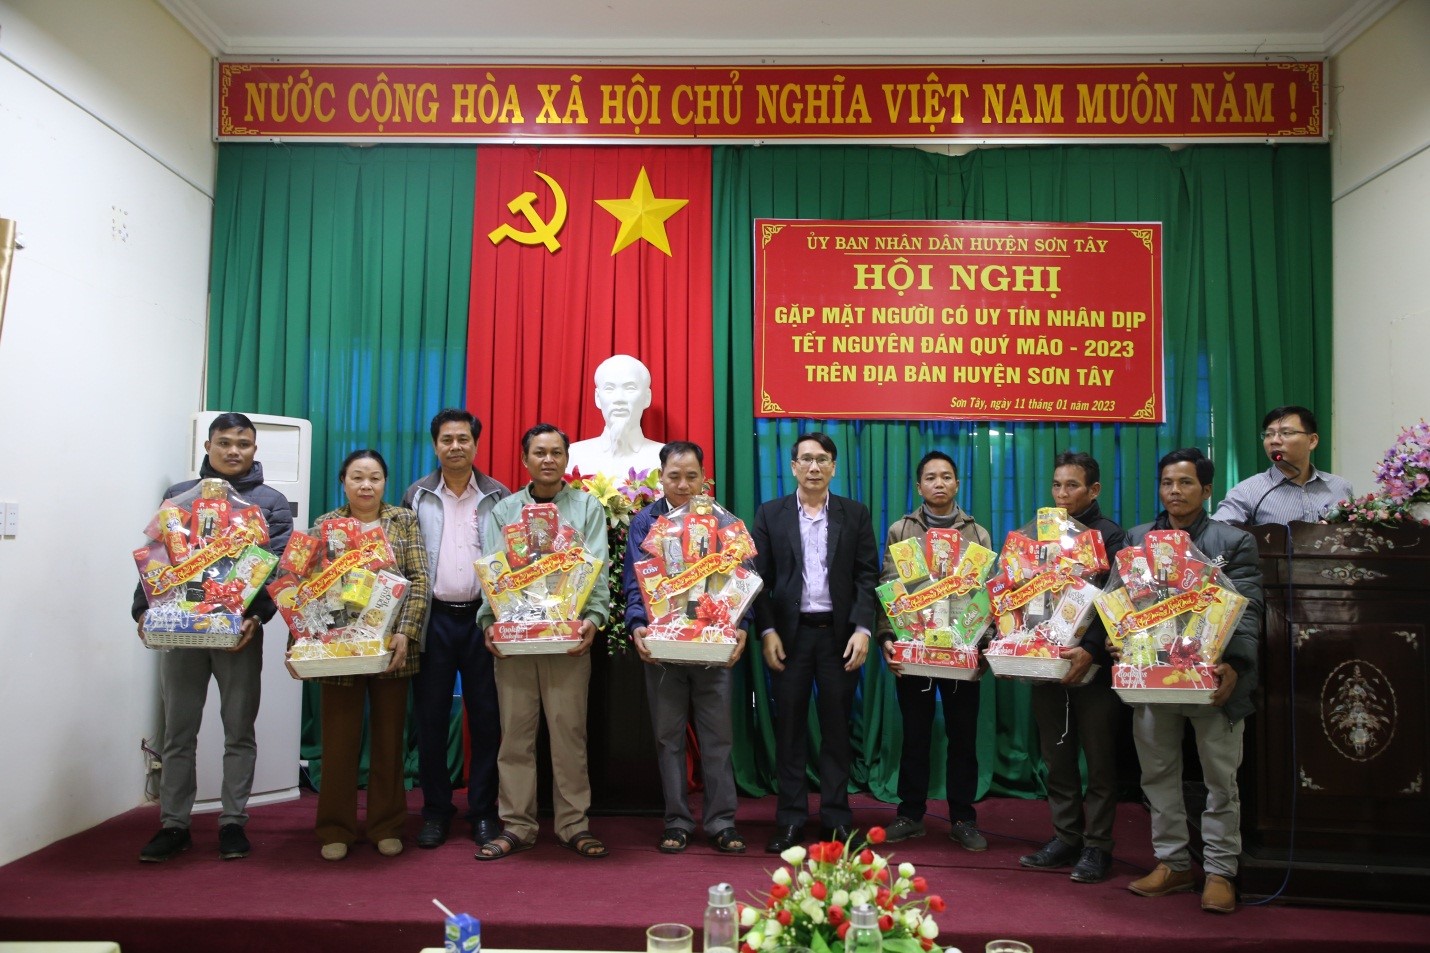 Huyện Sơn Tây tổ chức Hội nghị gặp mặt người có uy tín nhân dịp tết Nguyên đán Quý Mão - 2023